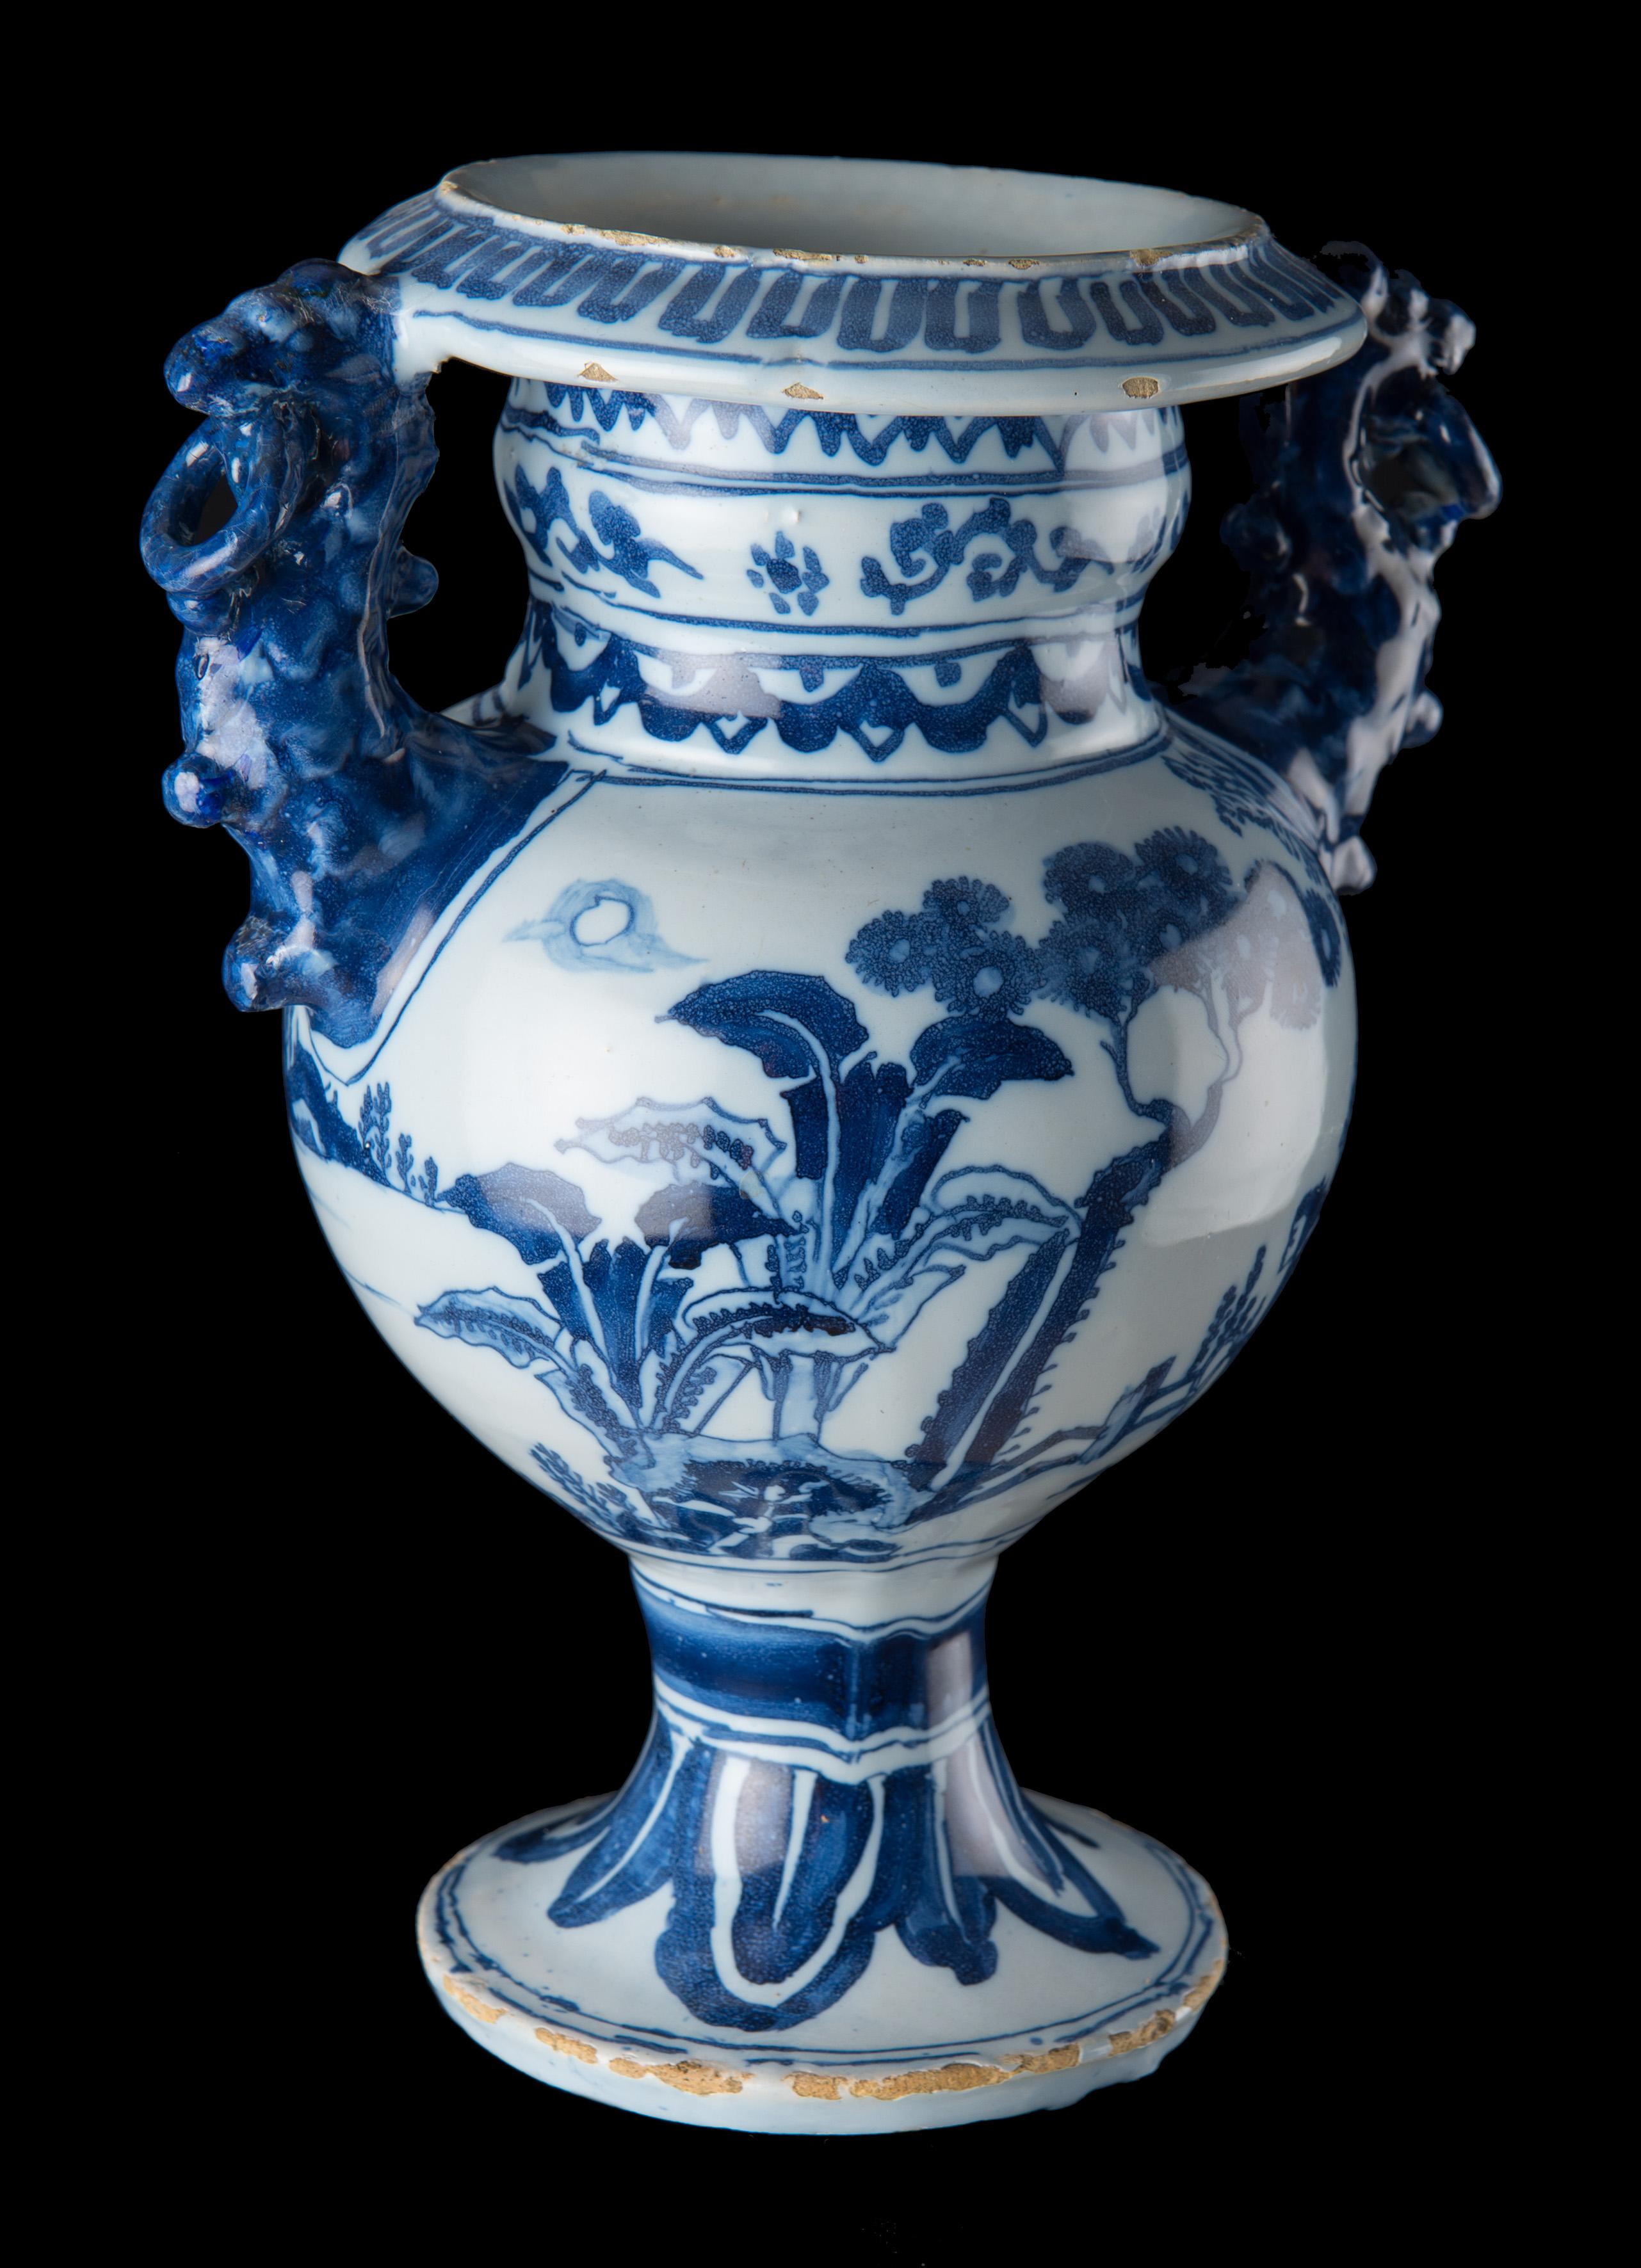 Vase d'autel en chinoiserie bleue et blanche. Delft, vers 1685
Le vase d'autel ovoïde repose sur un pied à taille haute. Le col cylindrique évasé se termine par un bord de bouche incliné vers l'extérieur. Les deux anses en forme de lion de couleur